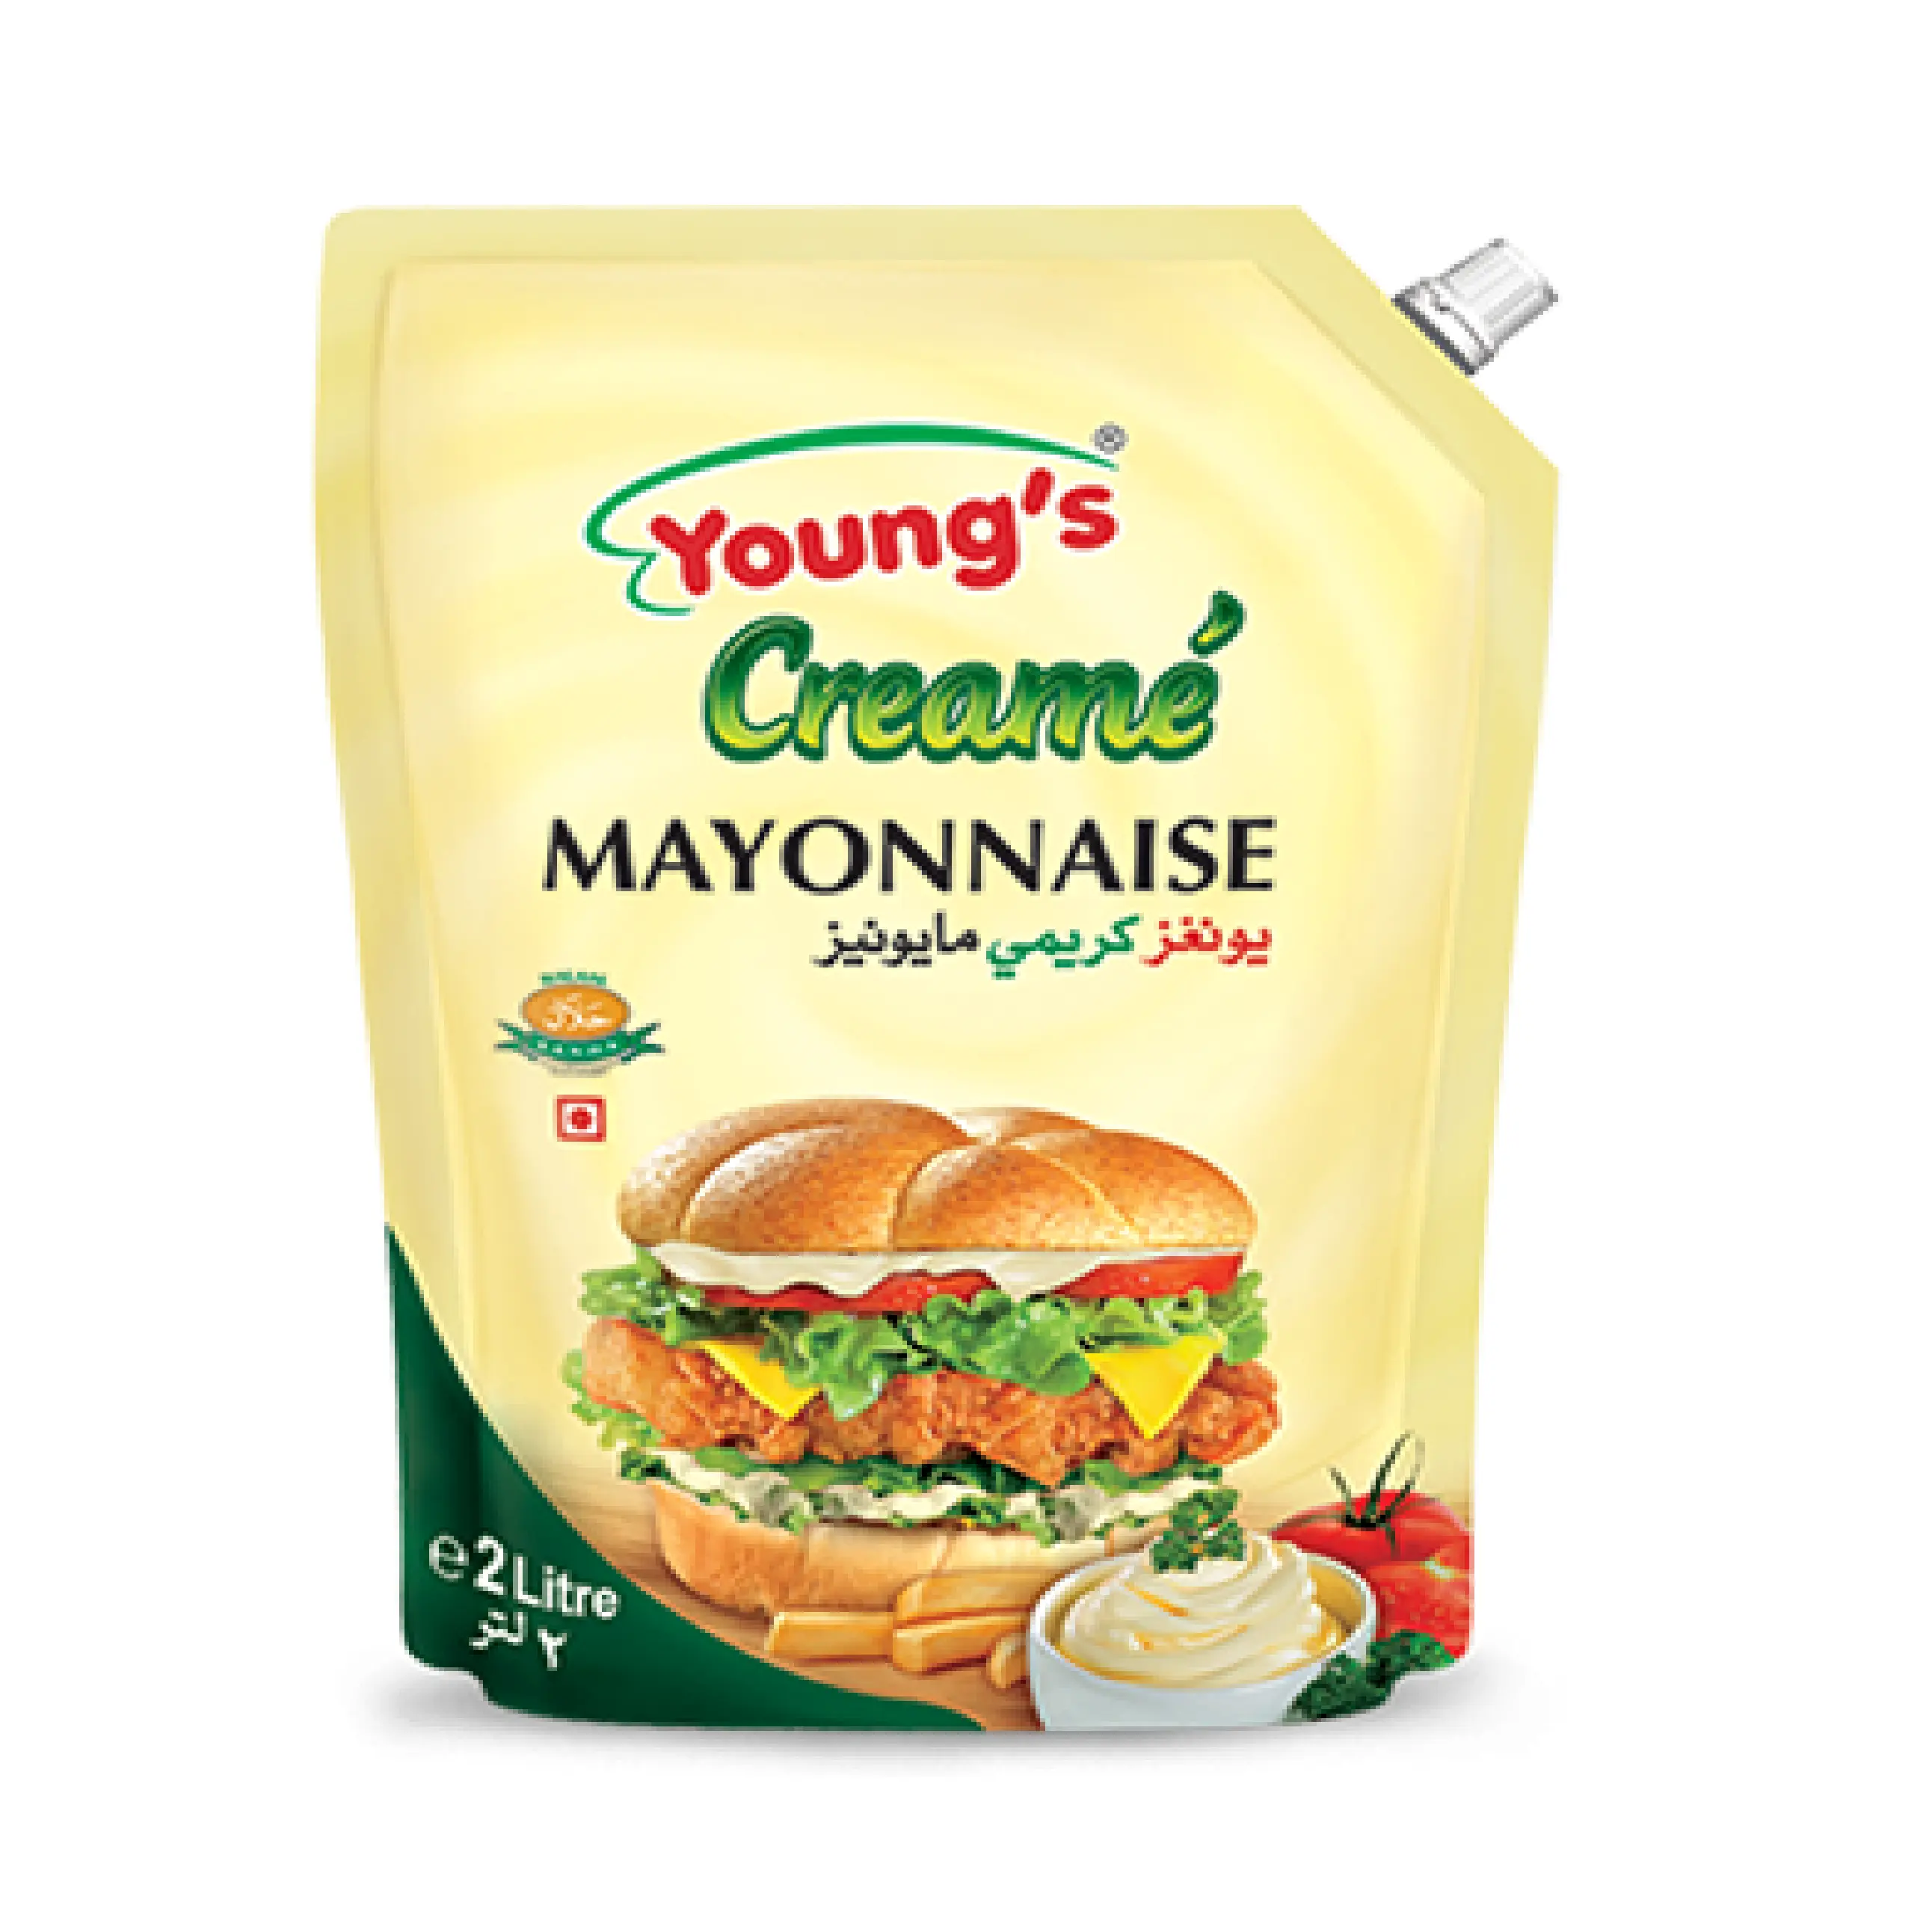 Майонез халяль. Майонез в пакете. Top mayonnaise Color. Майонез Халяль купить ПП.